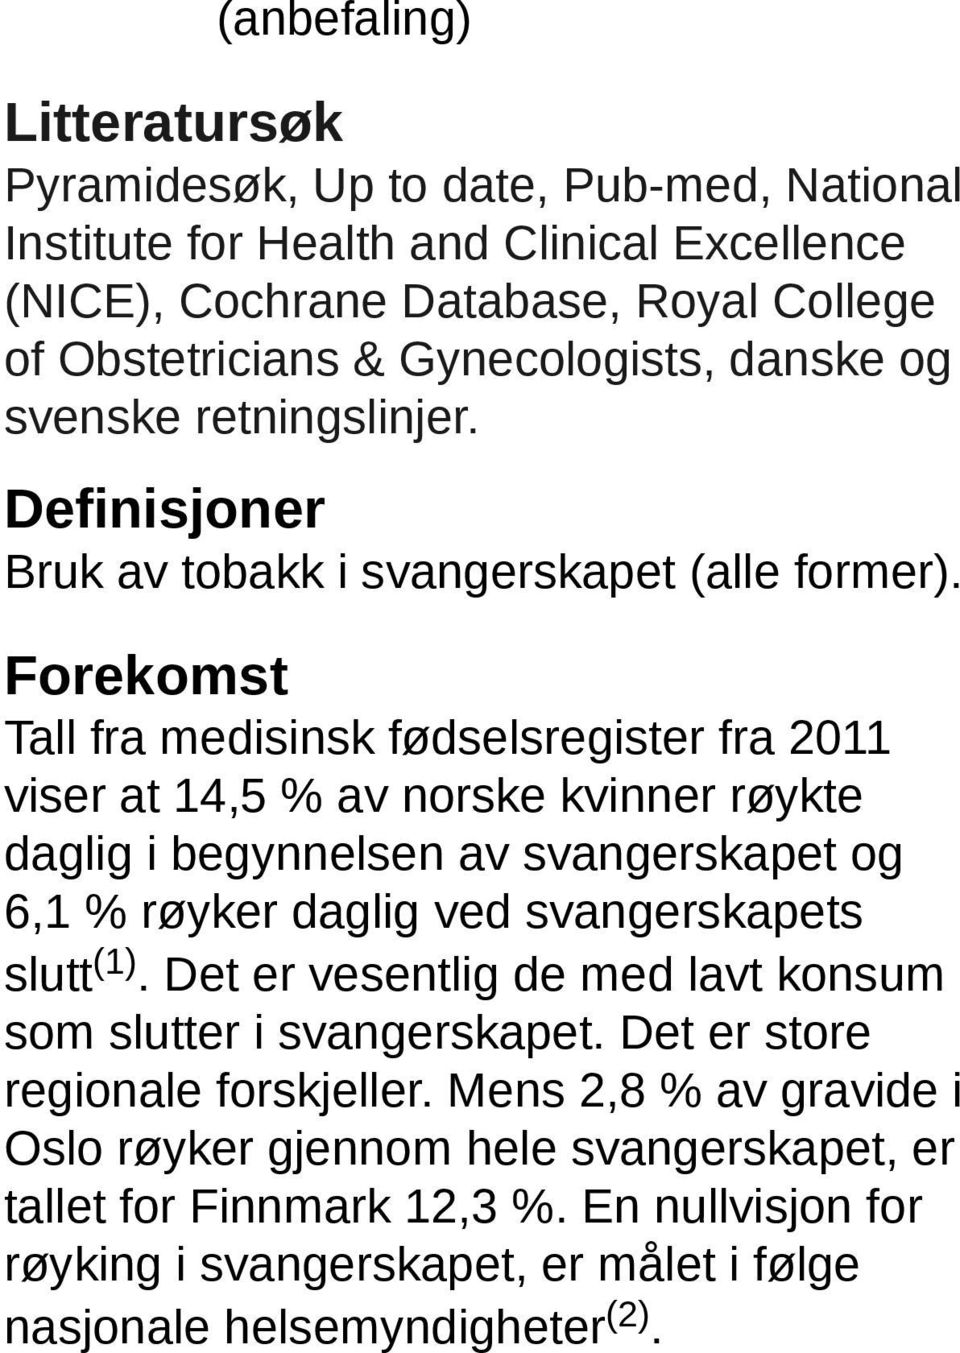 Forekomst Tall fra medisinsk fødselsregister fra 2011 viser at 14,5 % av norske kvinner røykte daglig i begynnelsen av svangerskapet og 6,1 % røyker daglig ved svangerskapets slutt (1).